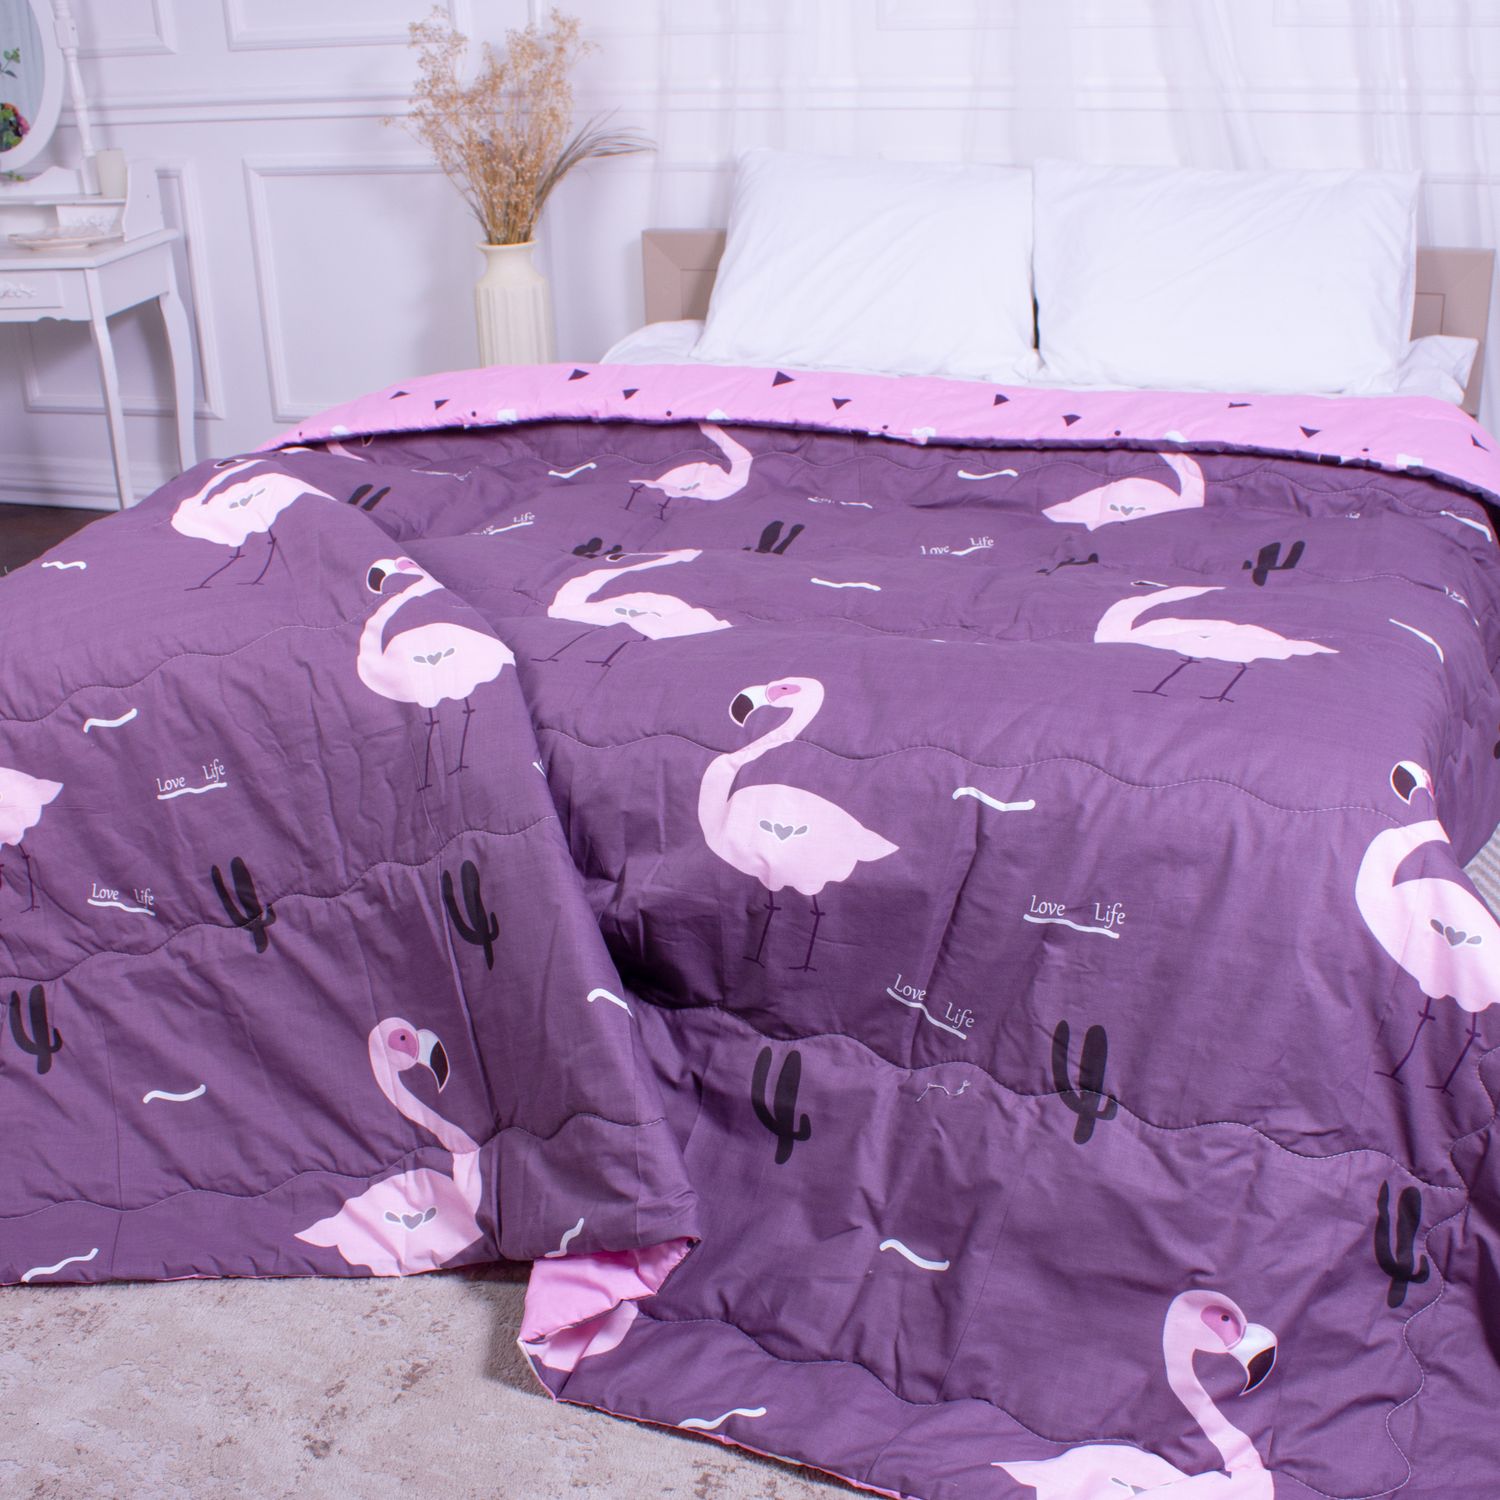 Одеяло хлопковое MirSon Летнее №2810 Сolor Fun Line Nice, евростандарт, 220х200 см, фиолетовое (2200006685081) - фото 1